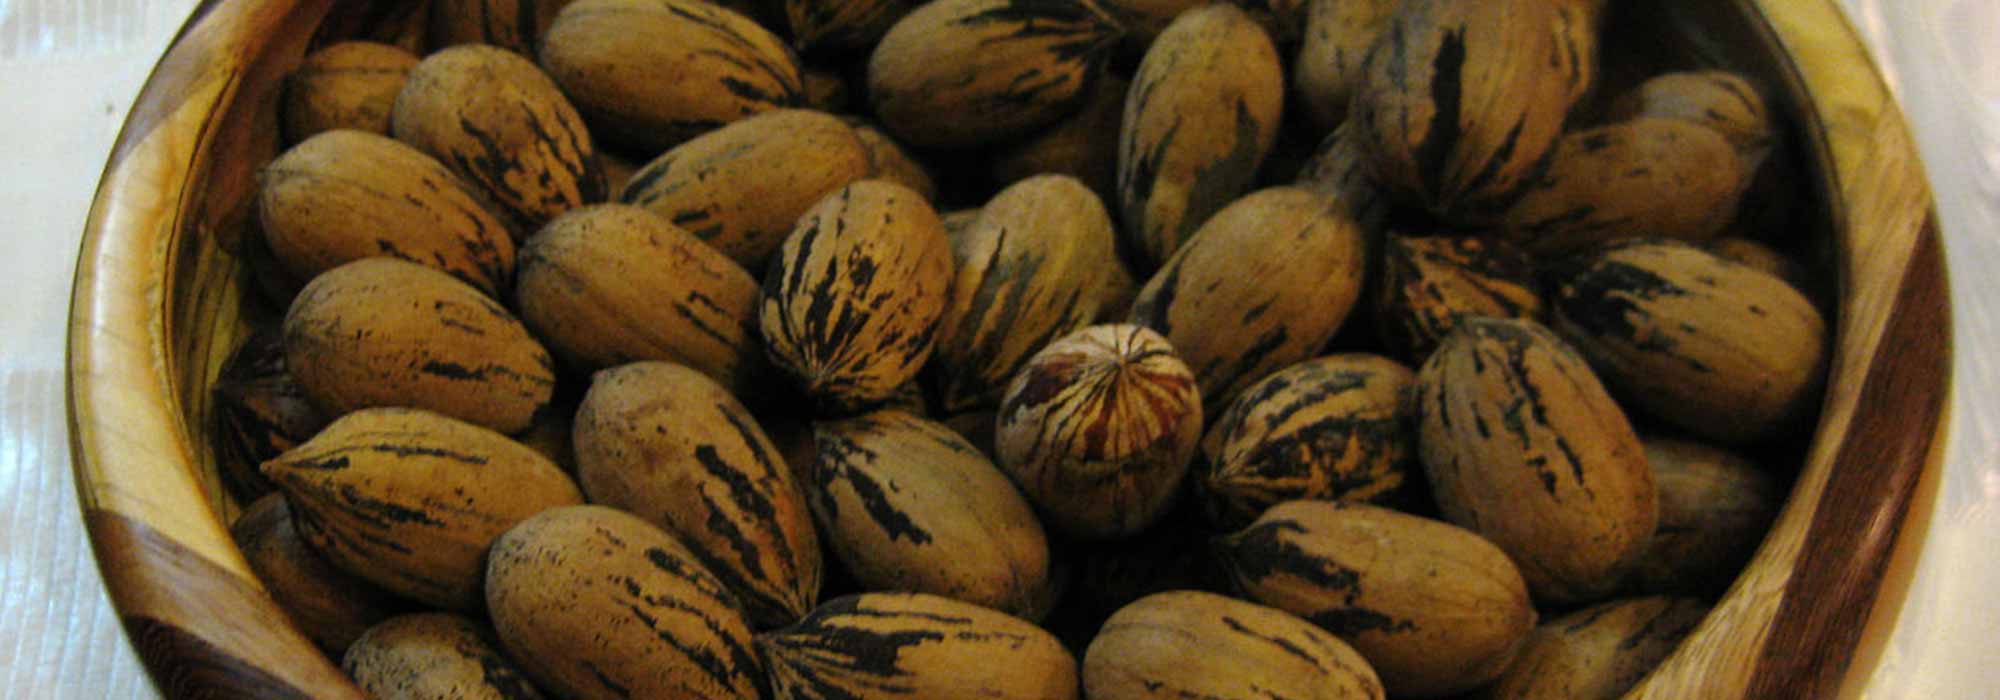 Cultiver un pacanier pour récolter des noix de pécan